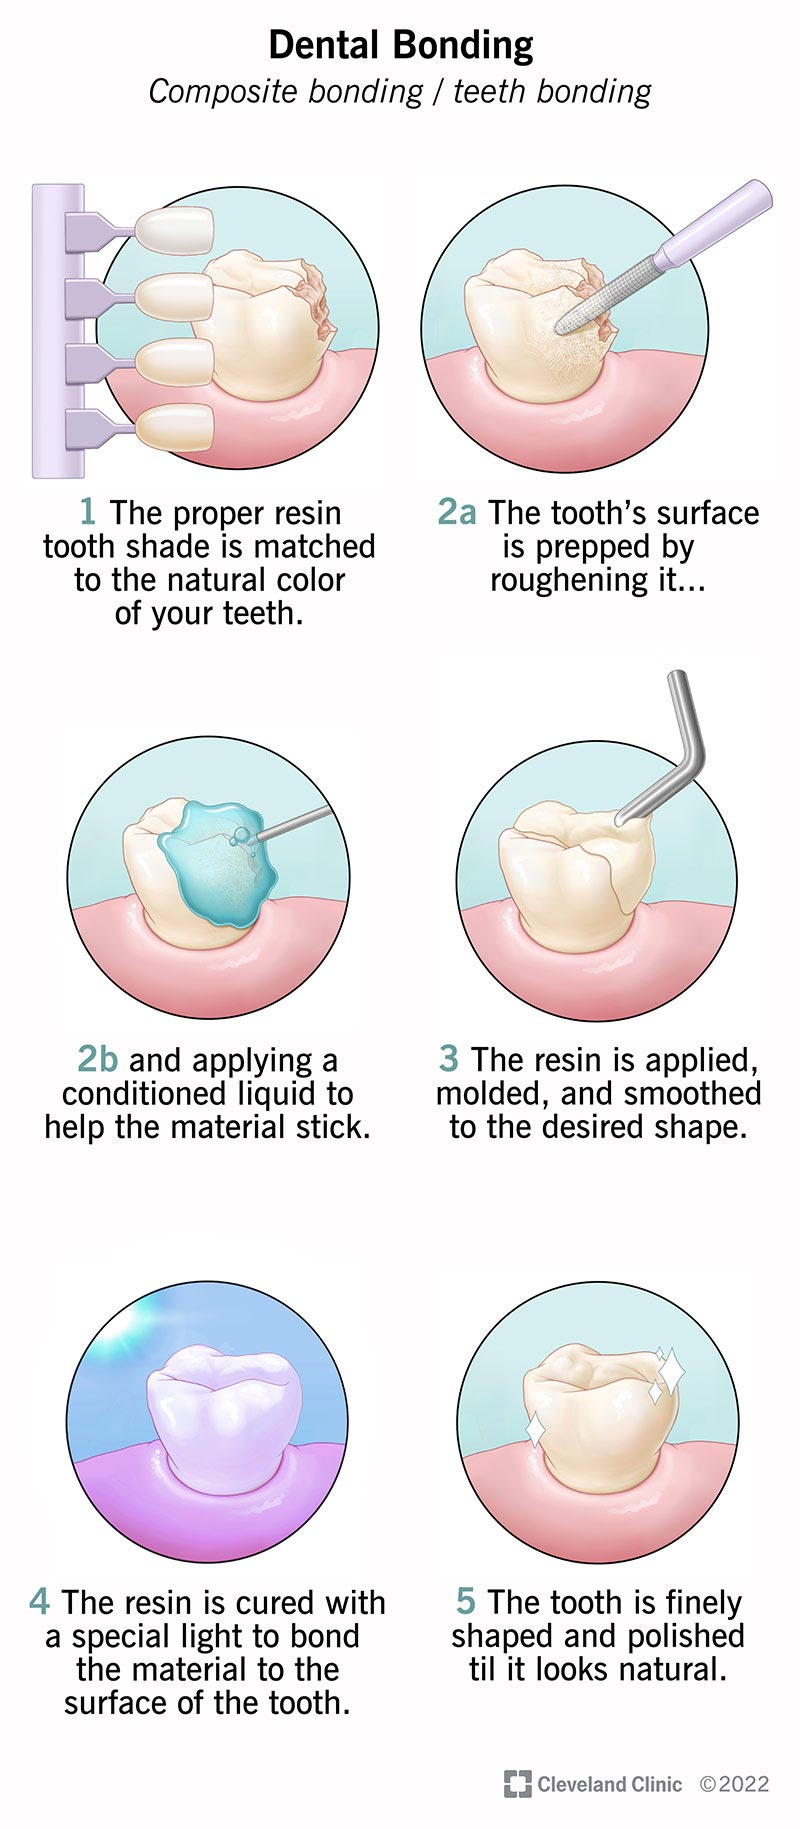 How to Do Dental Bonding?